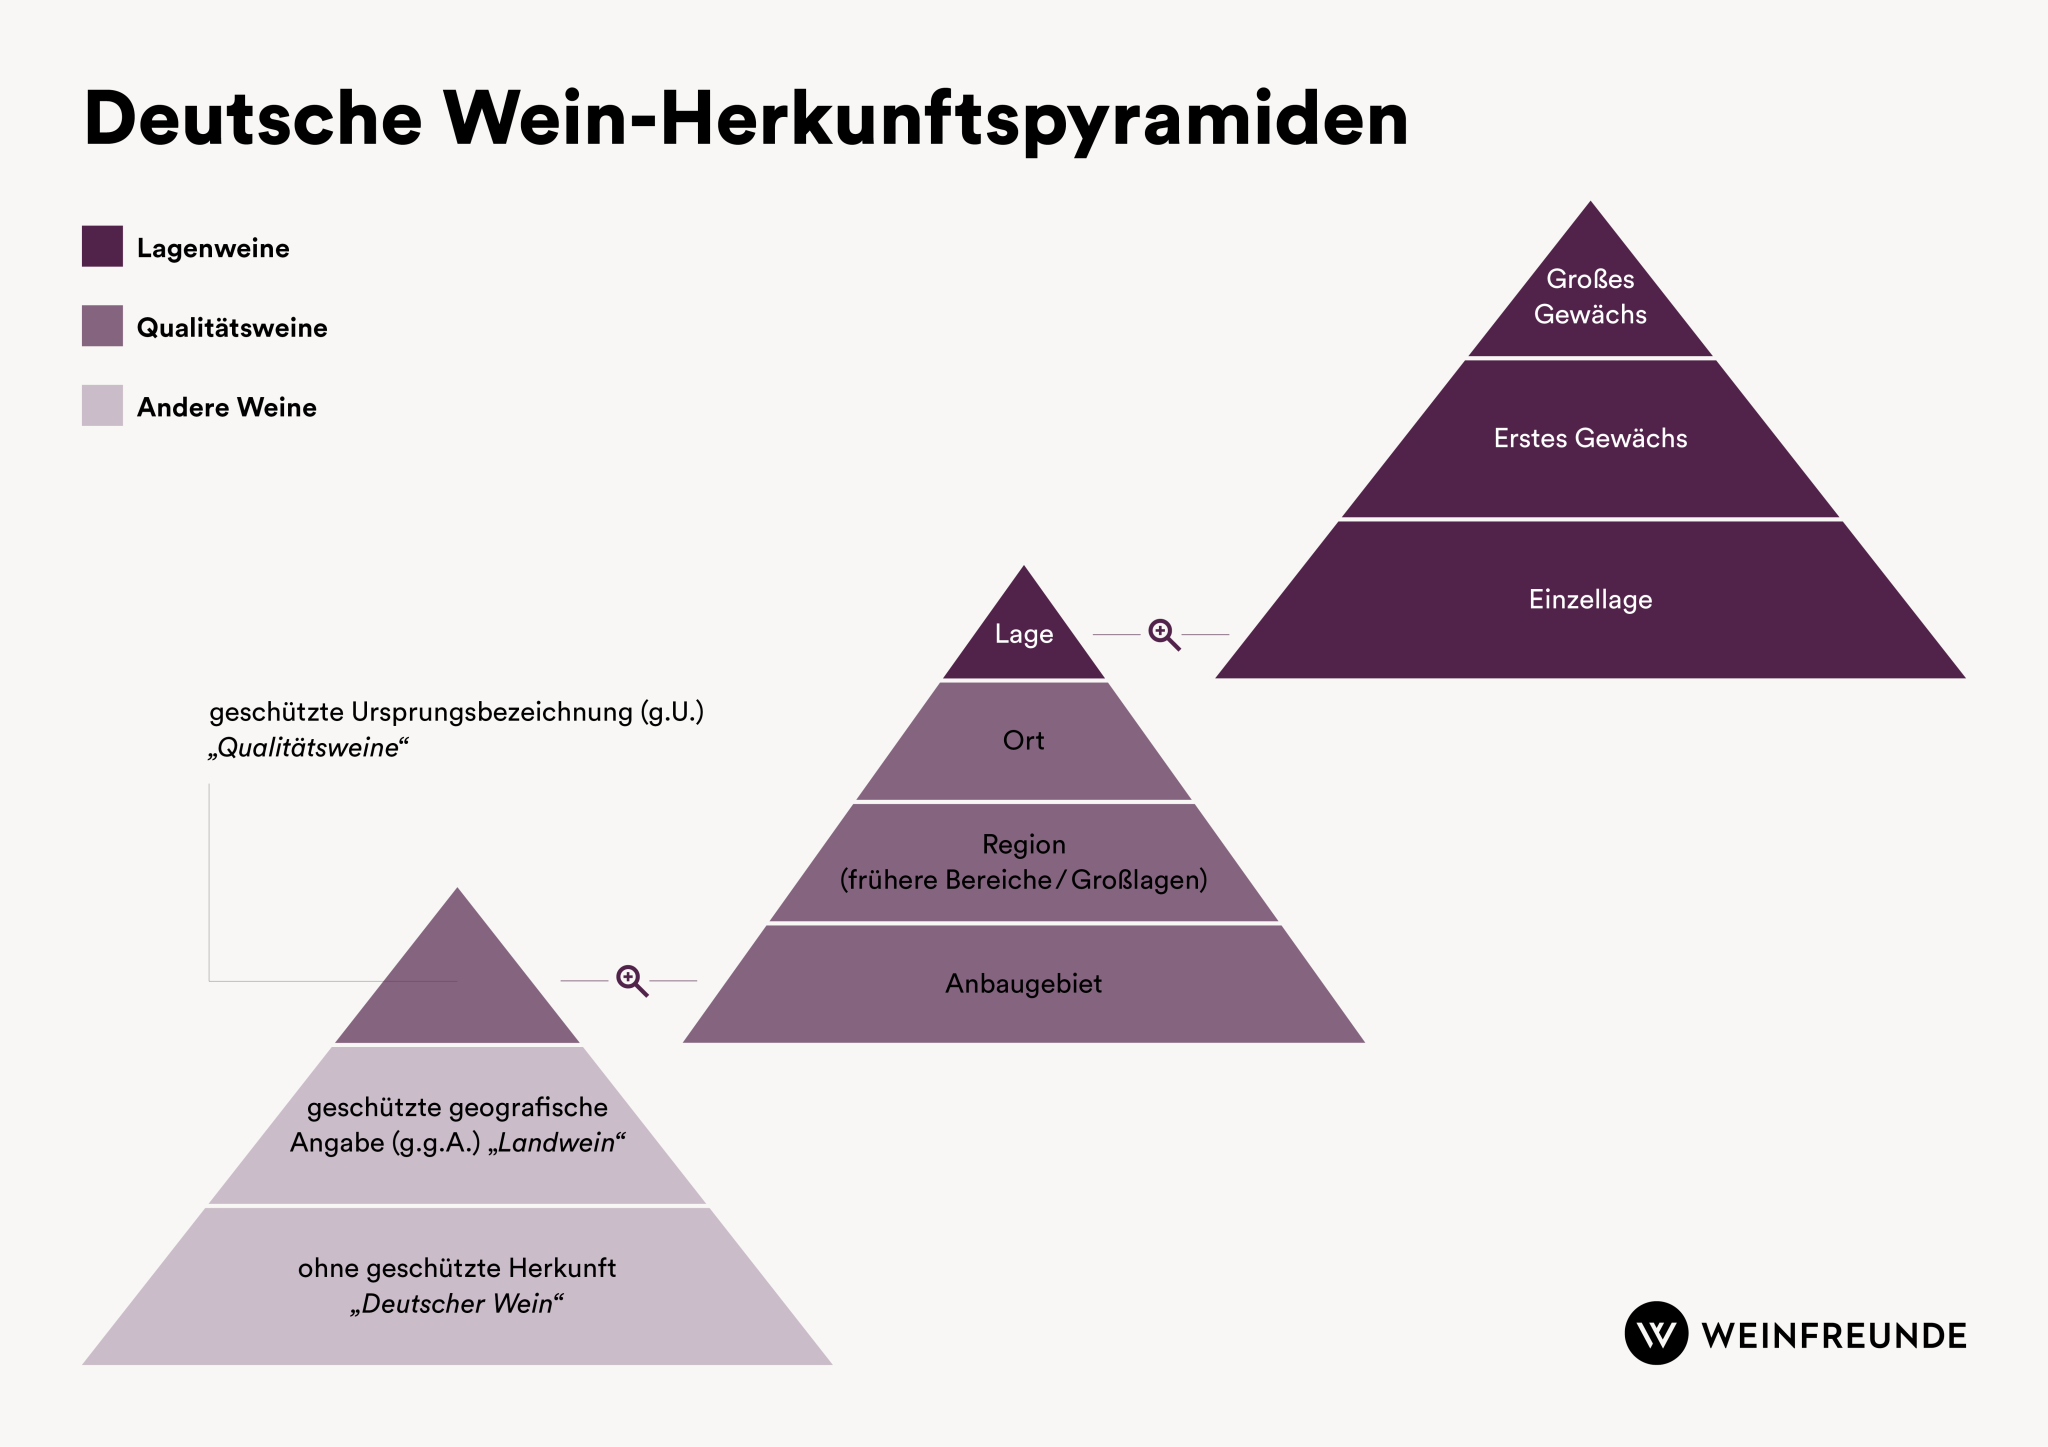 Deutsche Wein-Herkunftspyramiden